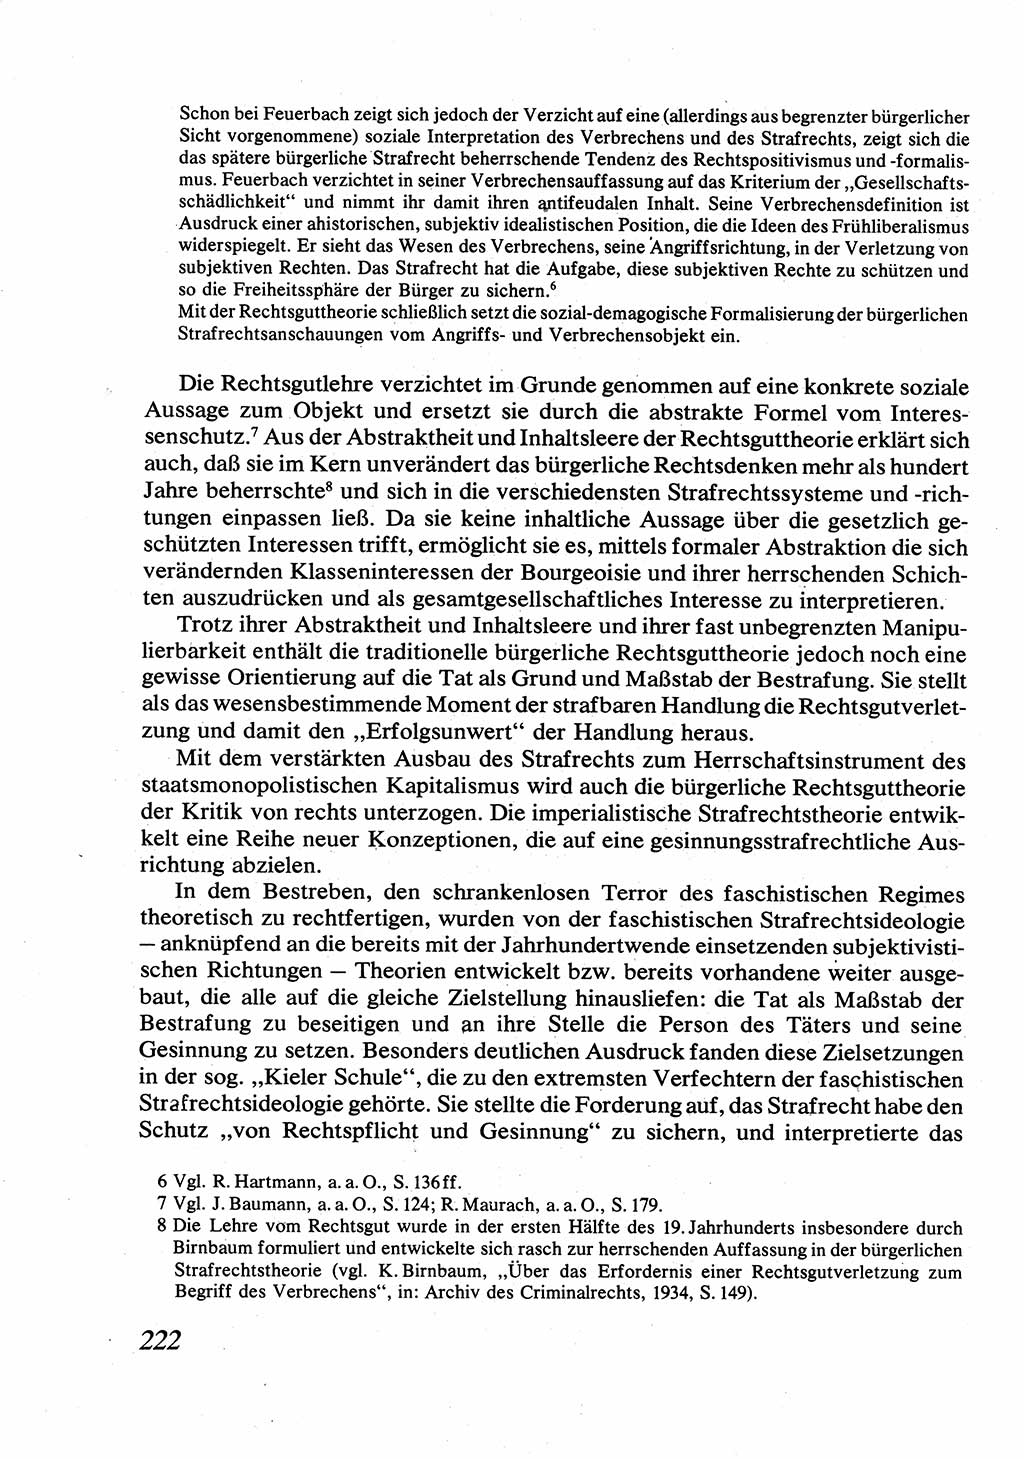 Strafrecht [Deutsche Demokratische Republik (DDR)], Allgemeiner Teil, Lehrbuch 1976, Seite 222 (Strafr. DDR AT Lb. 1976, S. 222)